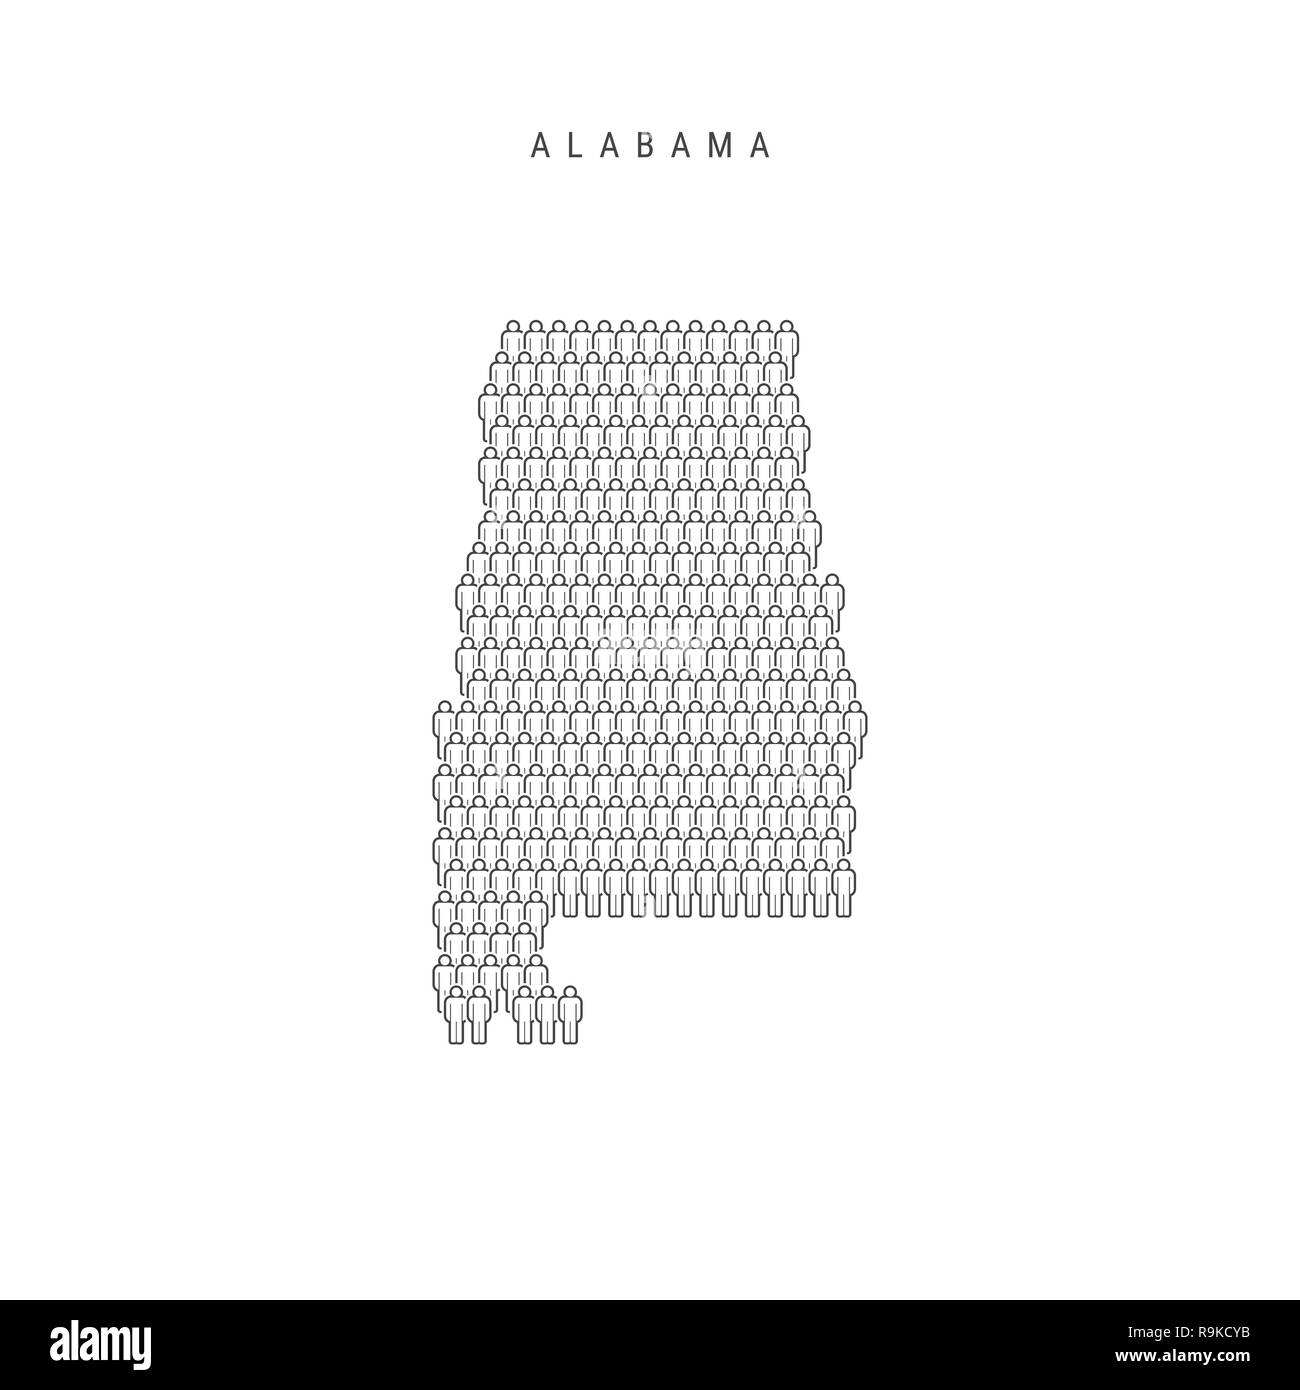 Leute Karte von Alabama, USA. Stilisierte Silhouette, Leute in der Form einer Karte von Alabama. Alabama Bevölkerung. Abbildung isoliert auf Whit Stockfoto